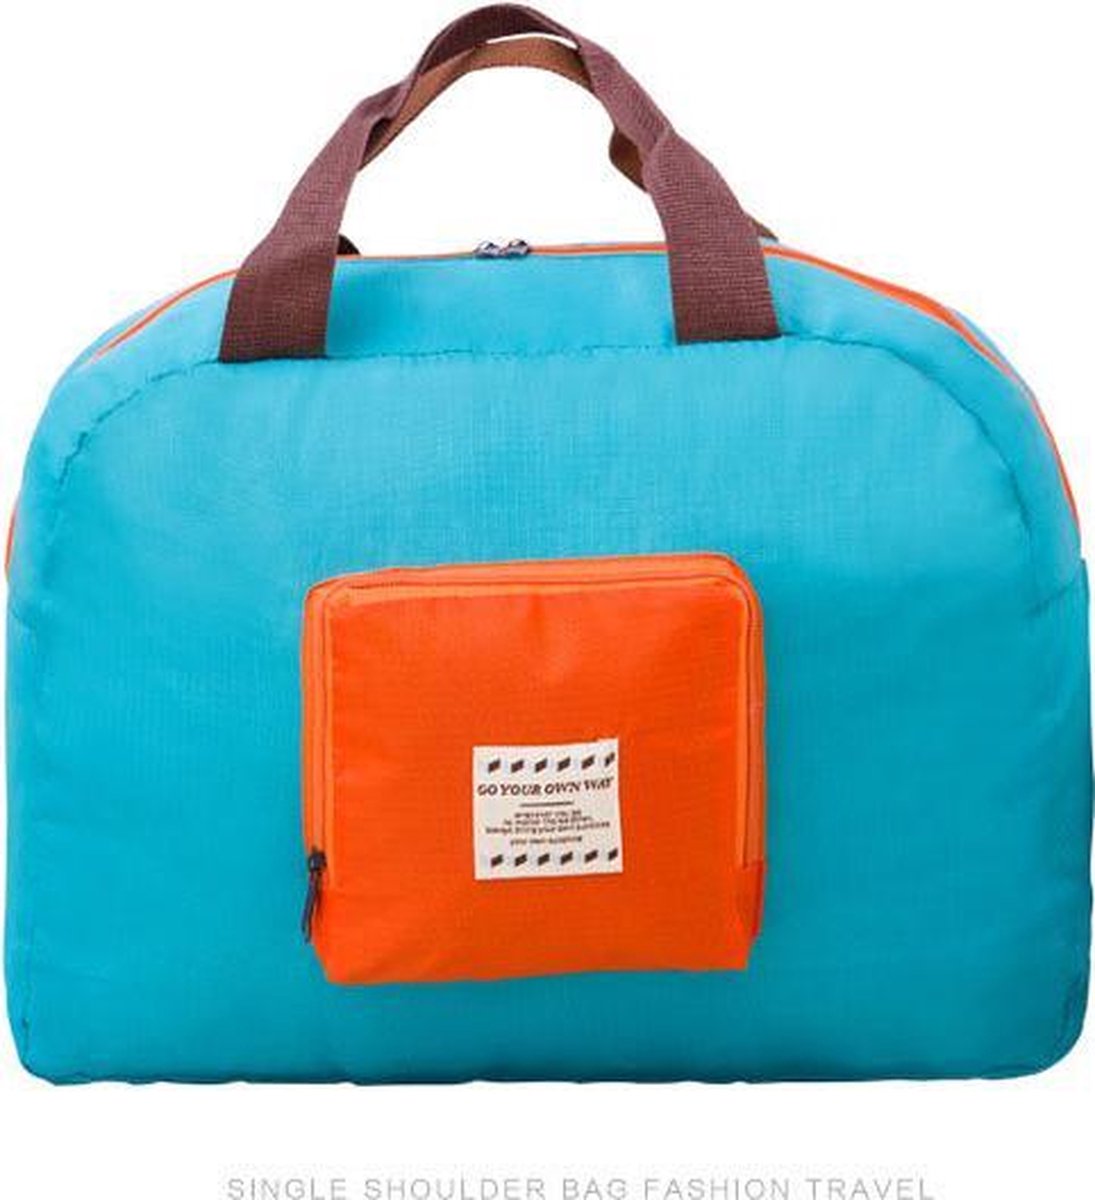 Decopatent® Sac Voyage Flightbag - Voyage sac valise Bagage à main